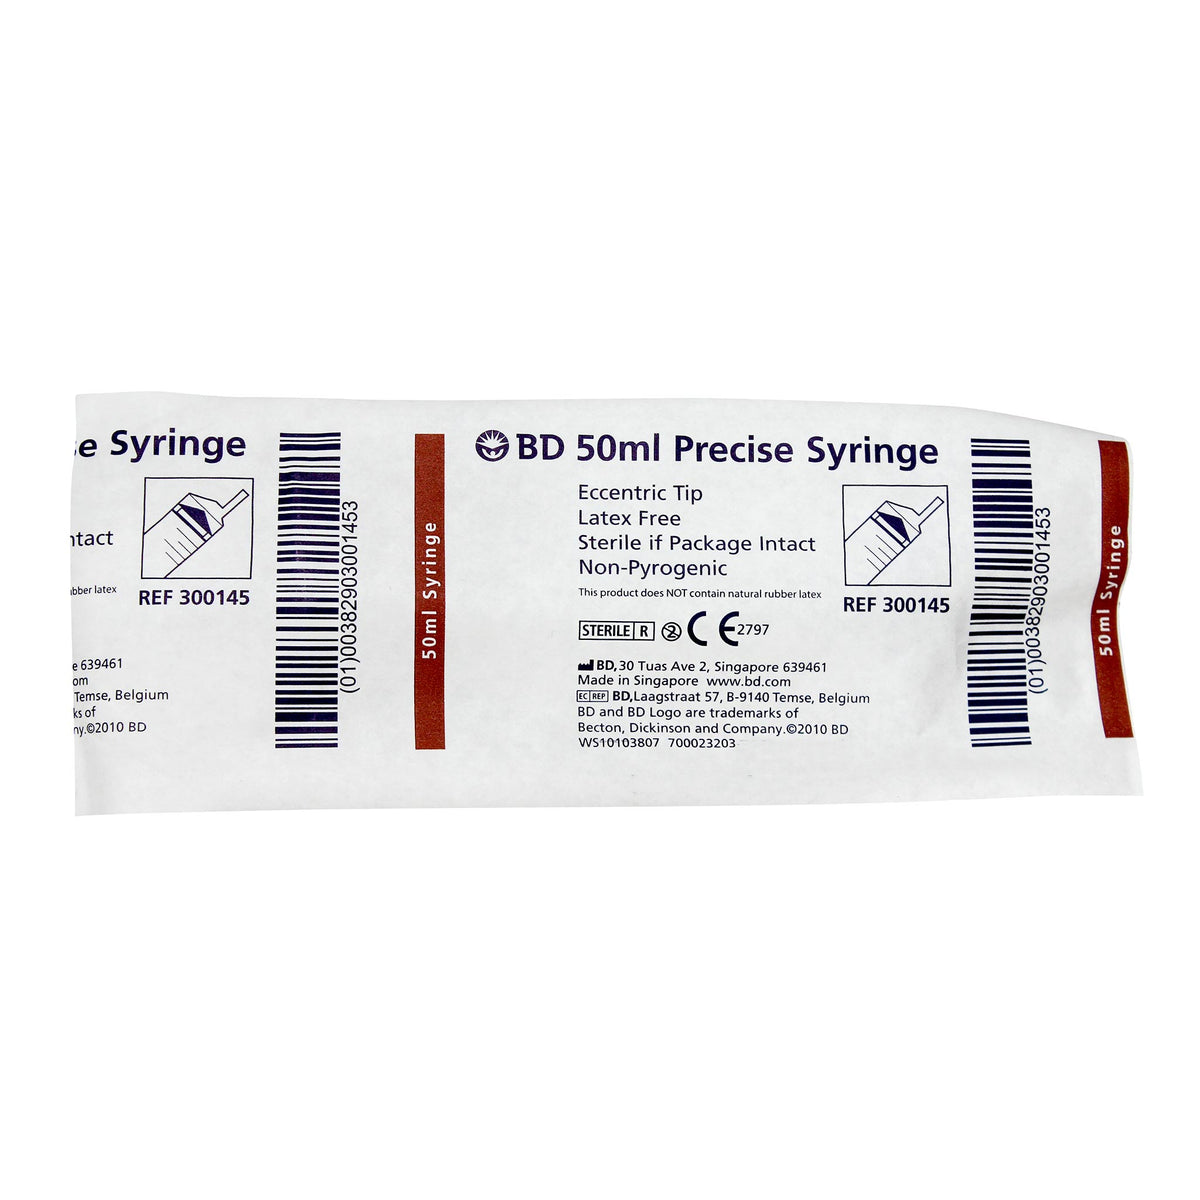 BD Sterile Disposable Syringe